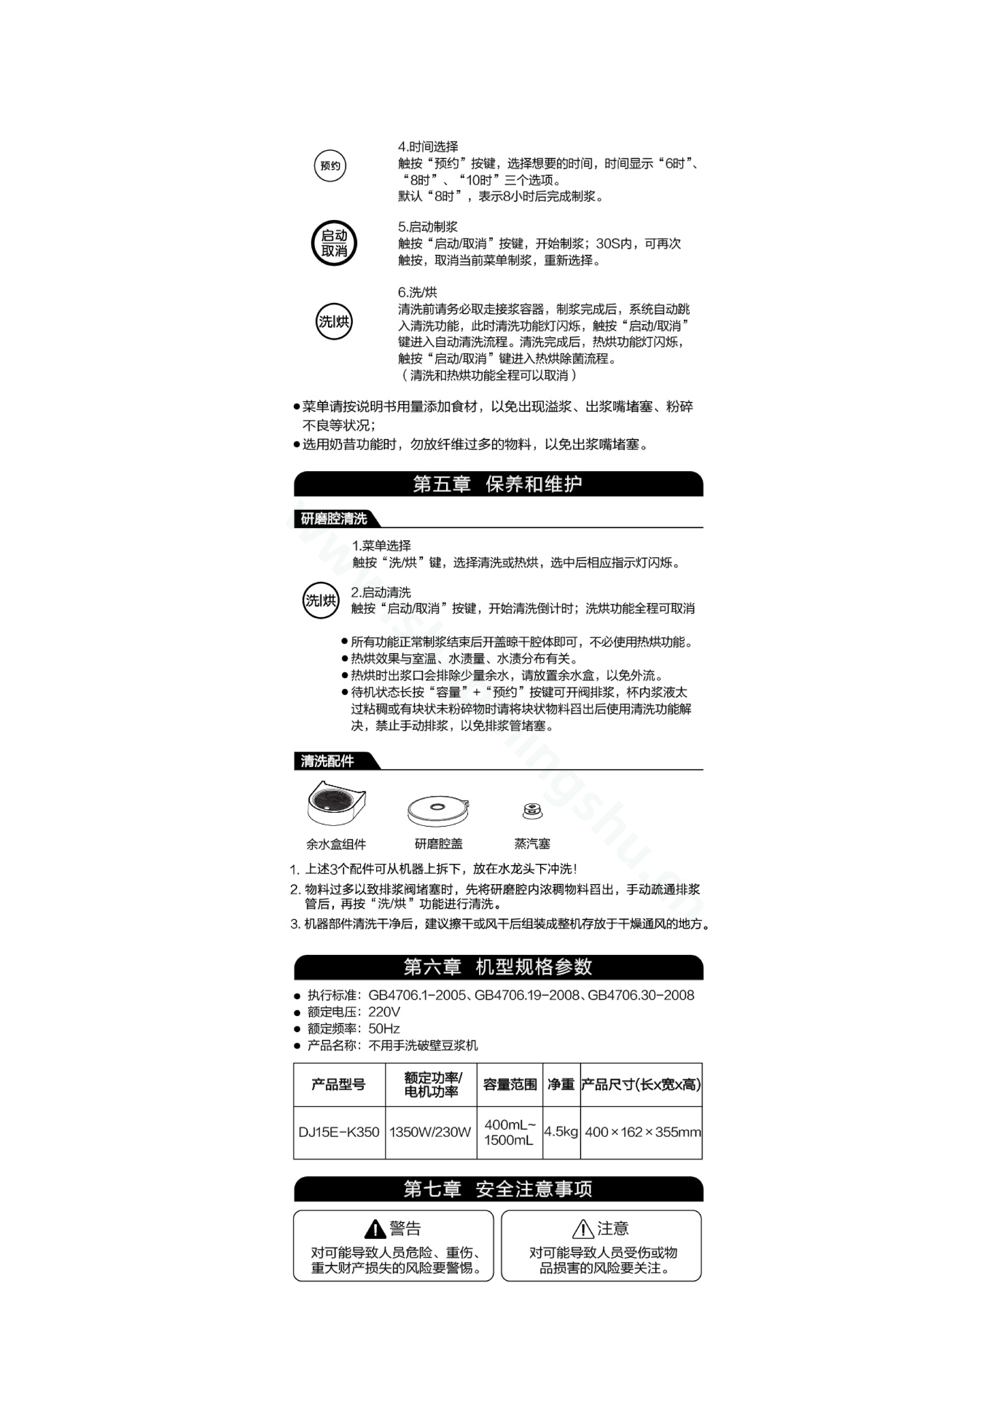 九阳豆浆机DJ15E-K350说明书第4页